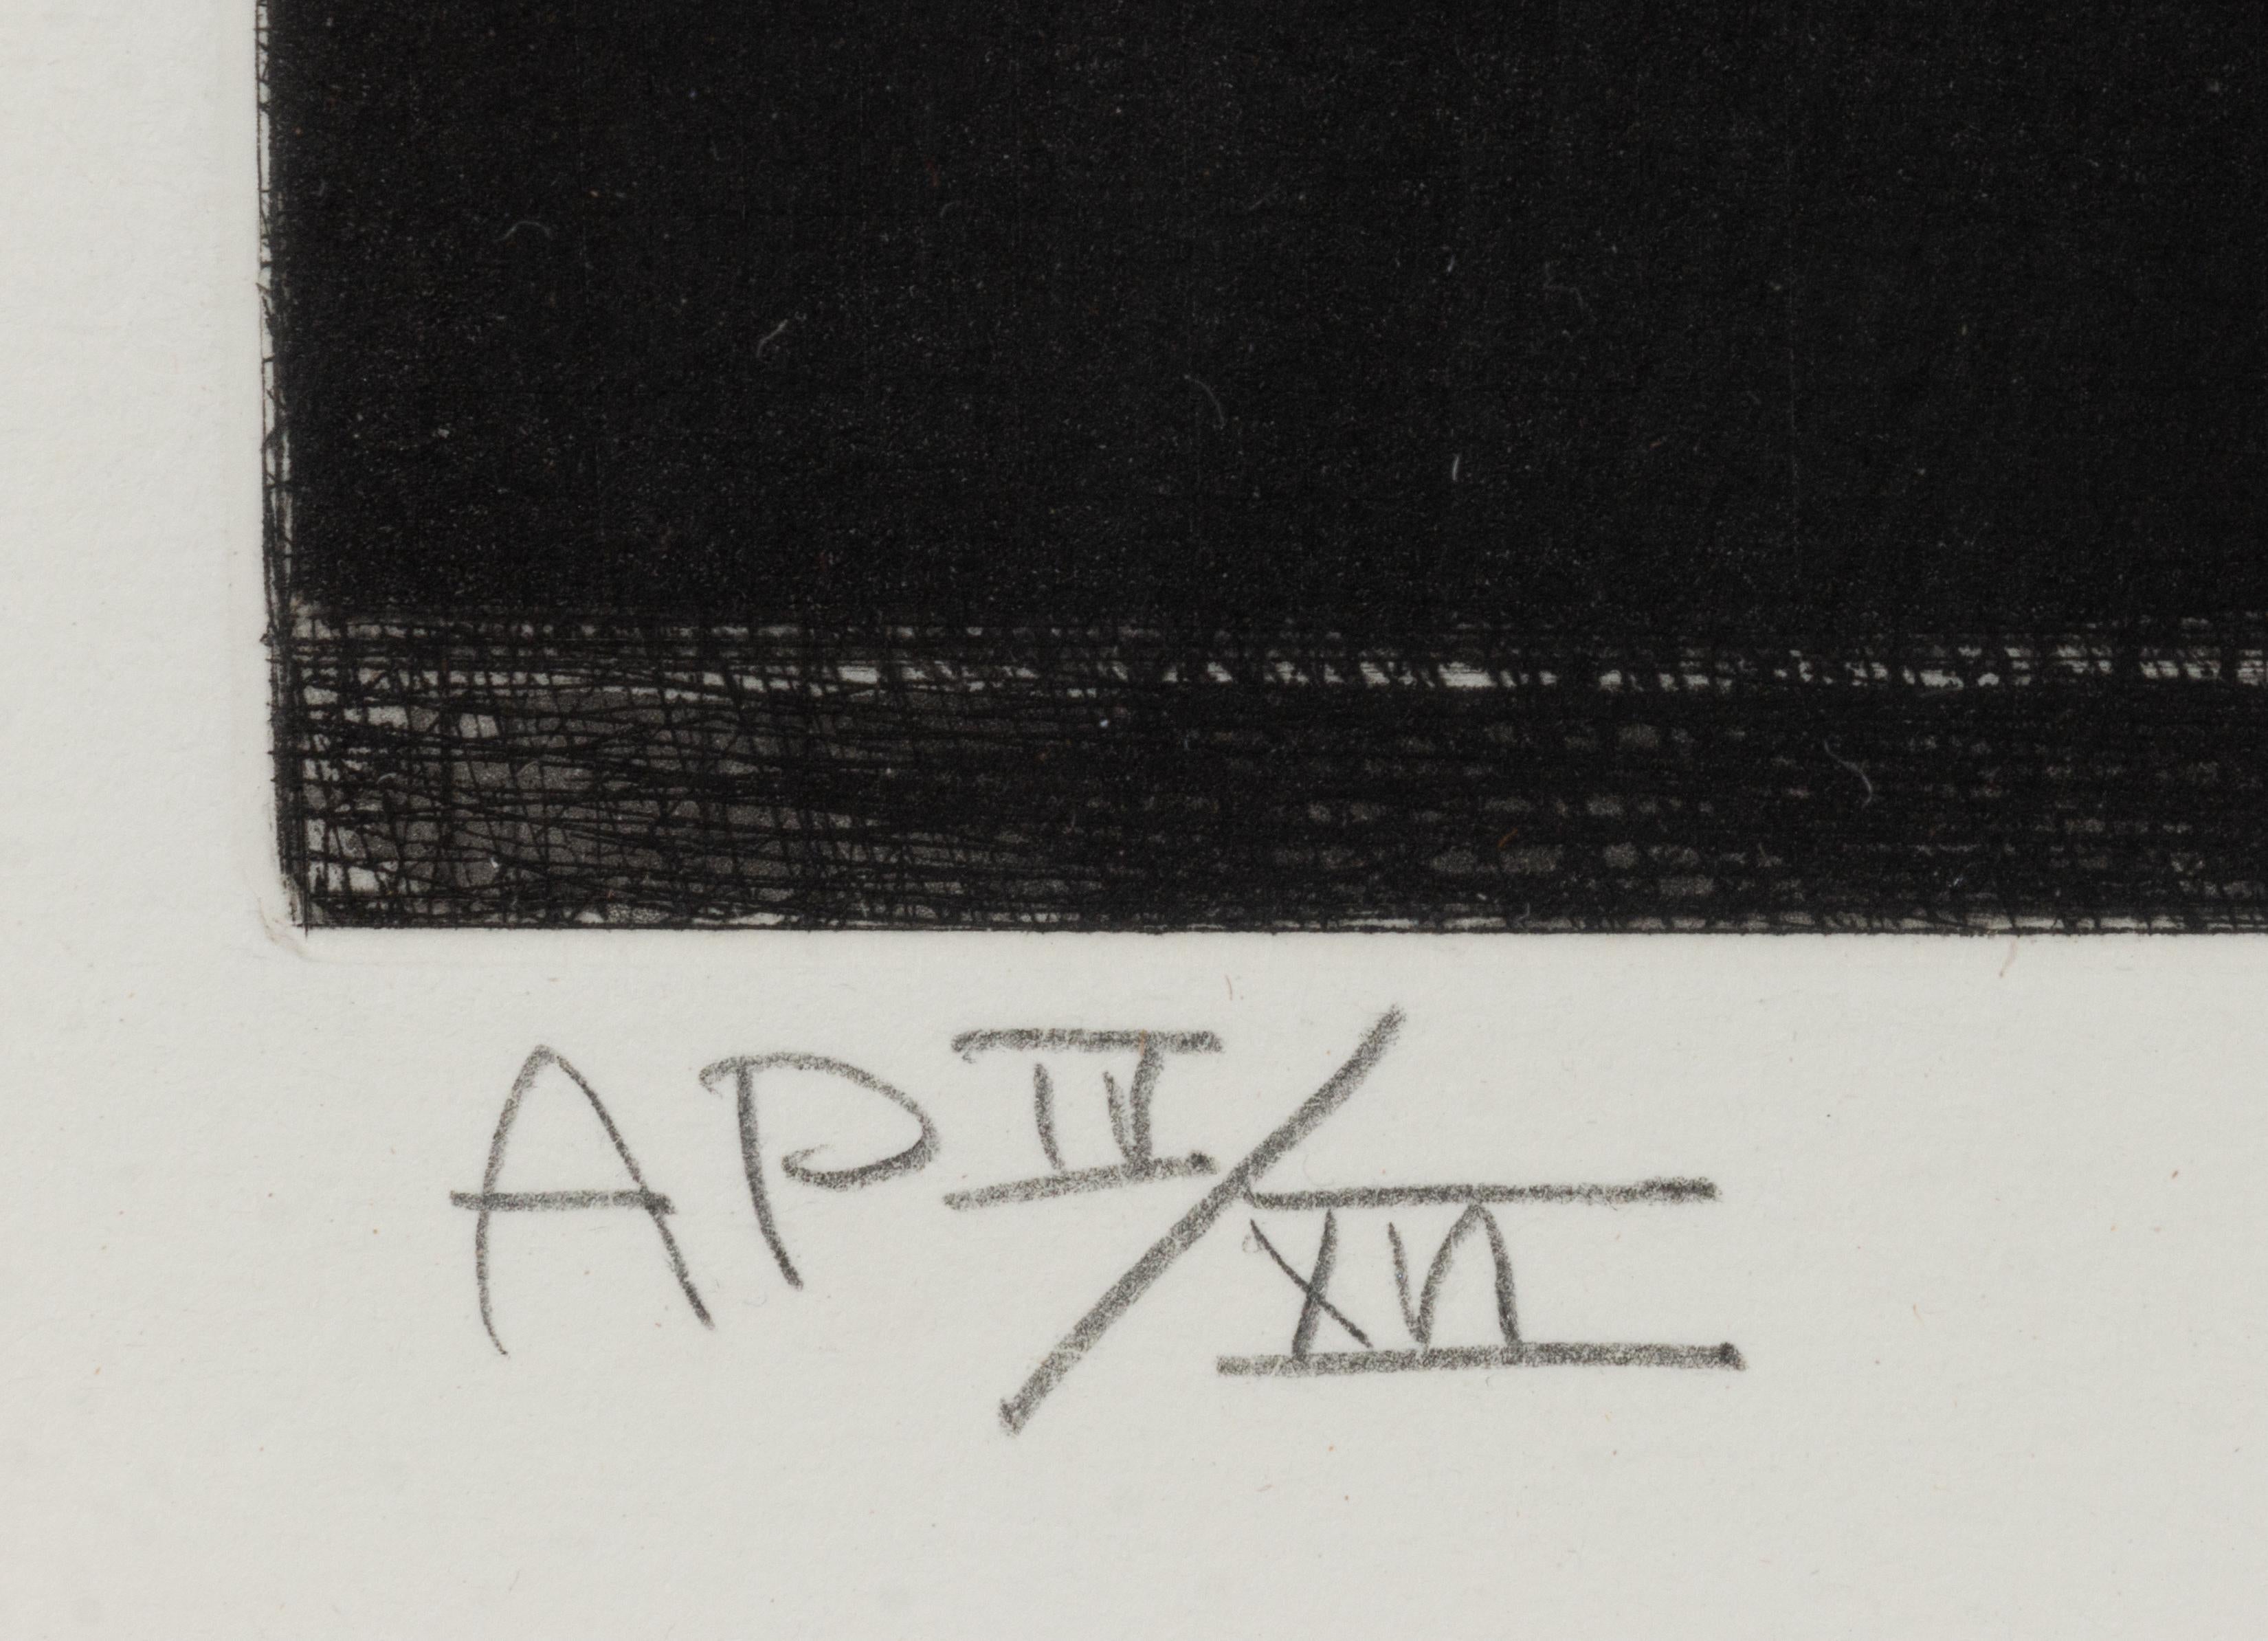 TECHNISCHE INFORMATIONEN

Jasper Johns
Zielscheibe mit Gipsabdrücken (schwarz/weiß)
1980-1989
Kaltnadelradierung und Aquatinta
31 1/8 x 24 1/8 Zoll.
AP IV/XVI
Mit Bleistift signiert, datiert 80-89 und nummeriert

Begleitet mit COA von Gregg